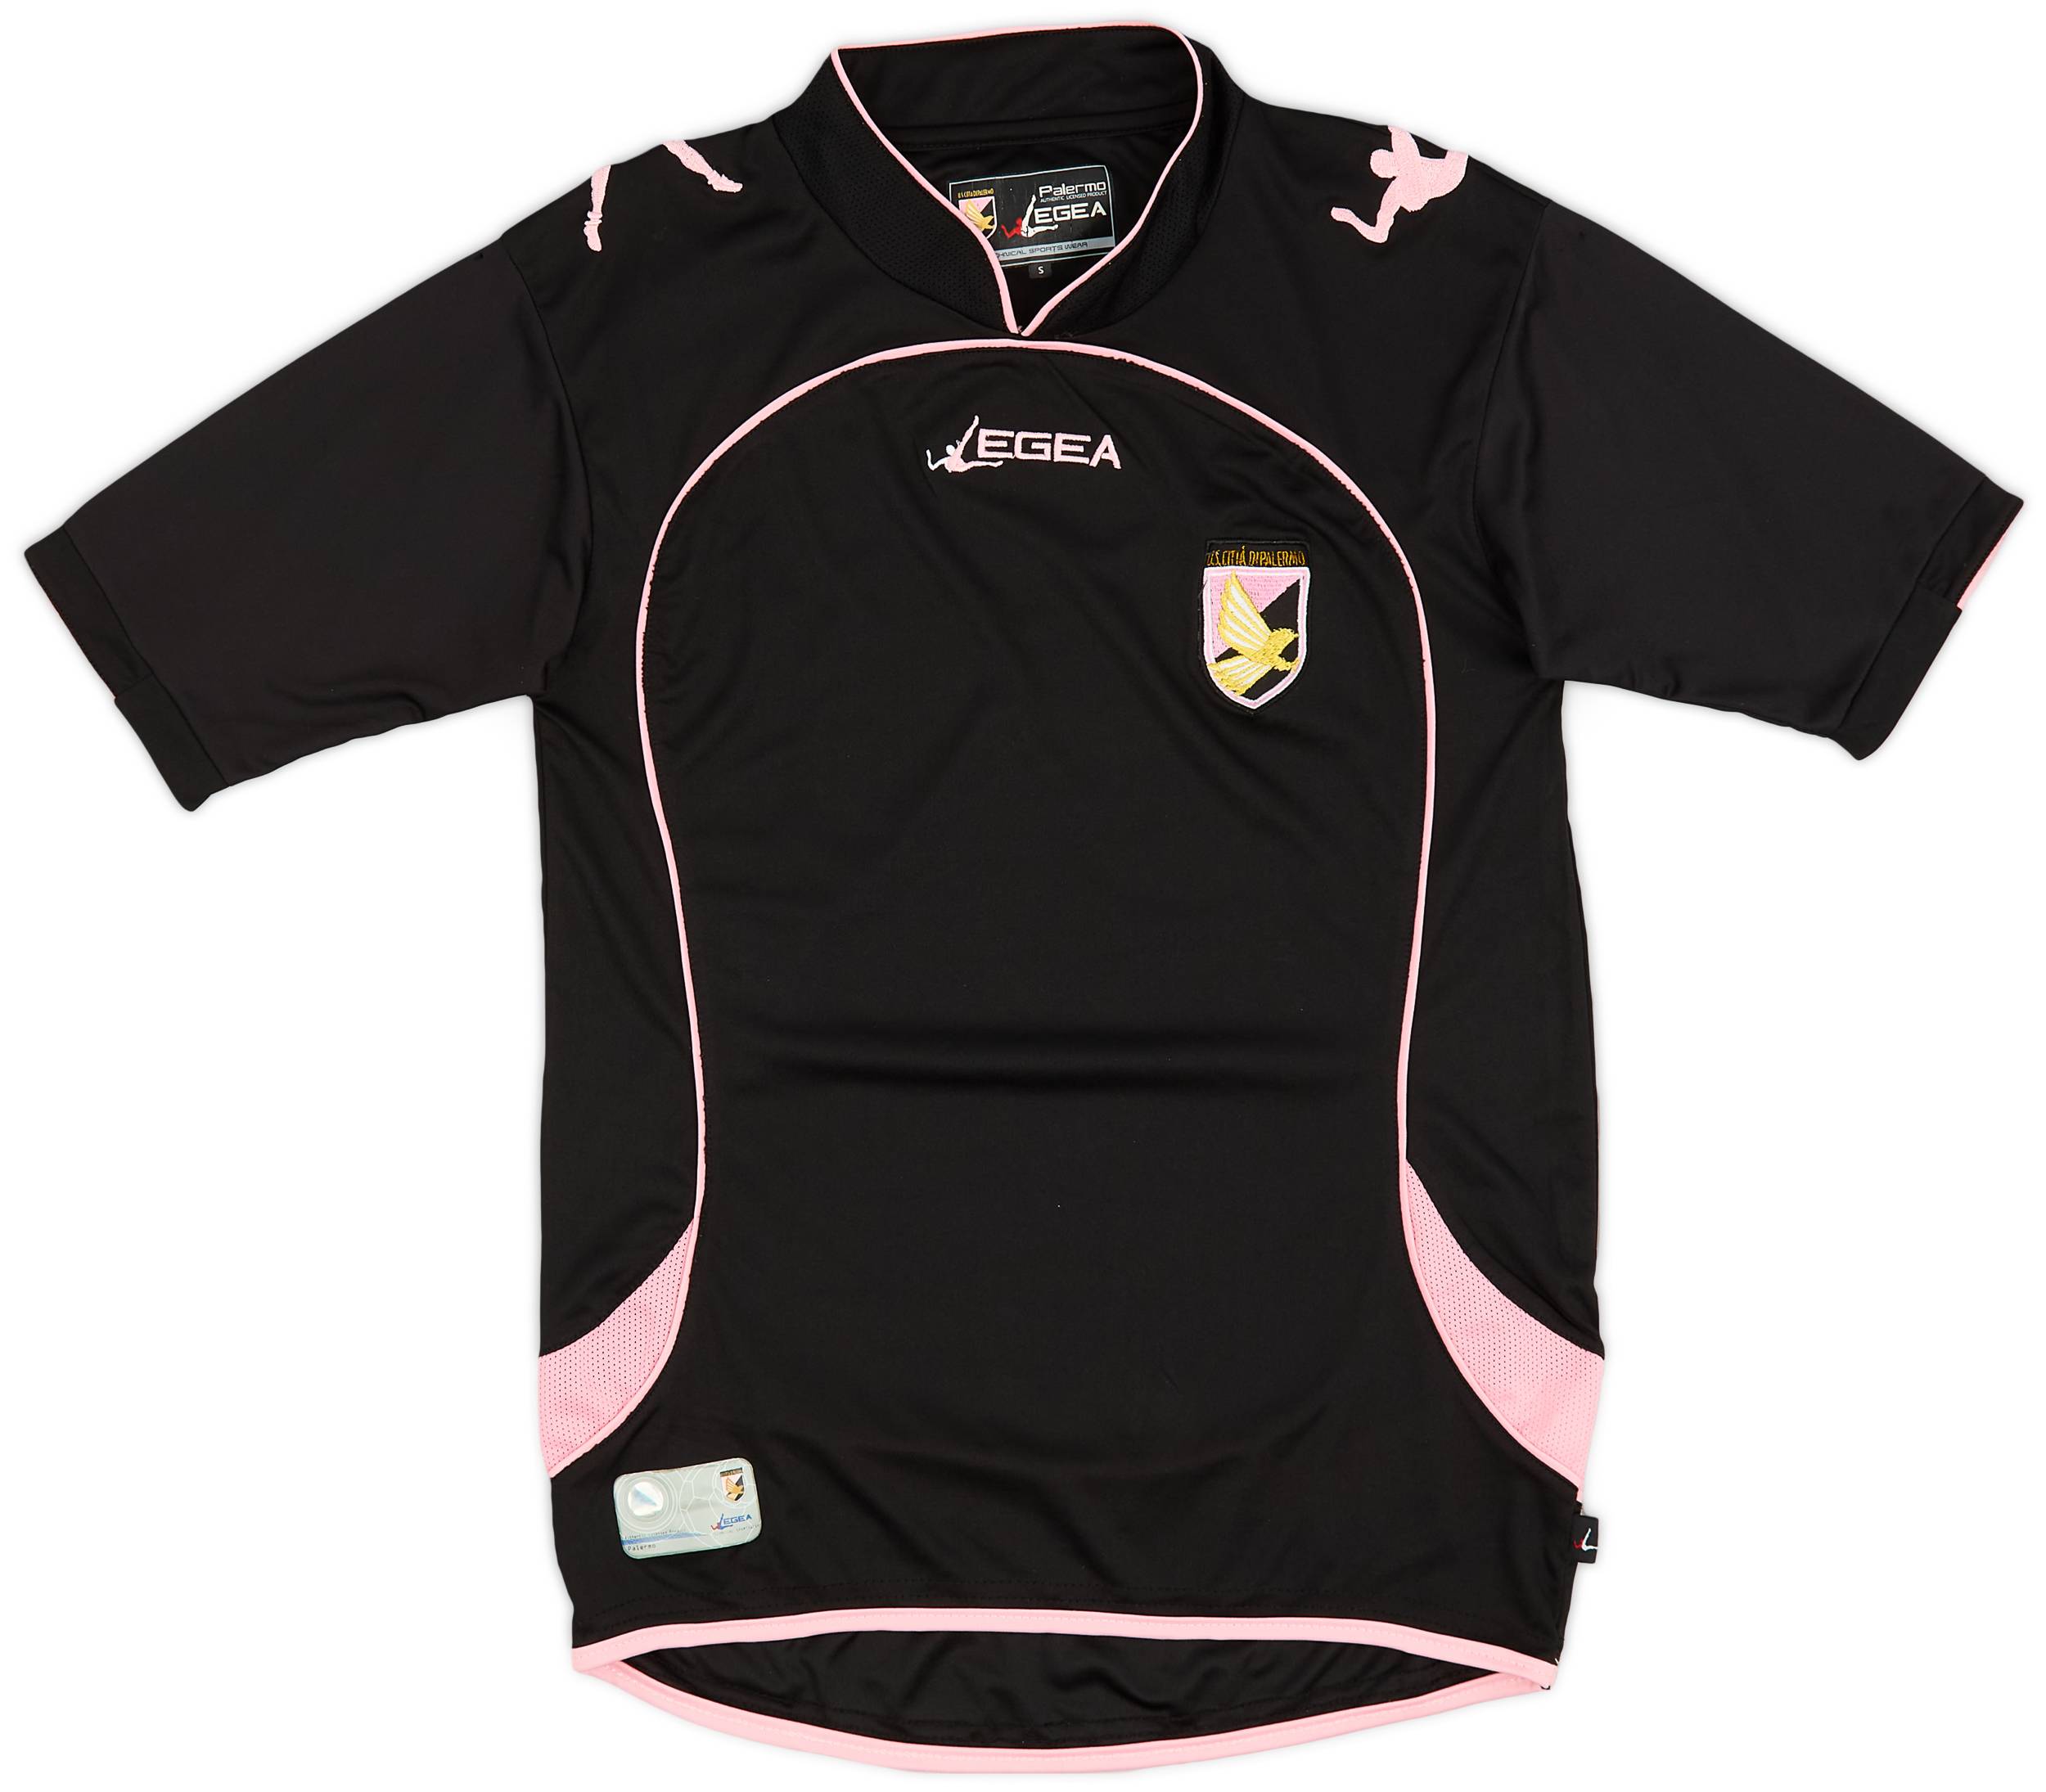 2010-11 Palermo Third Shirt - 9/10 - (S)